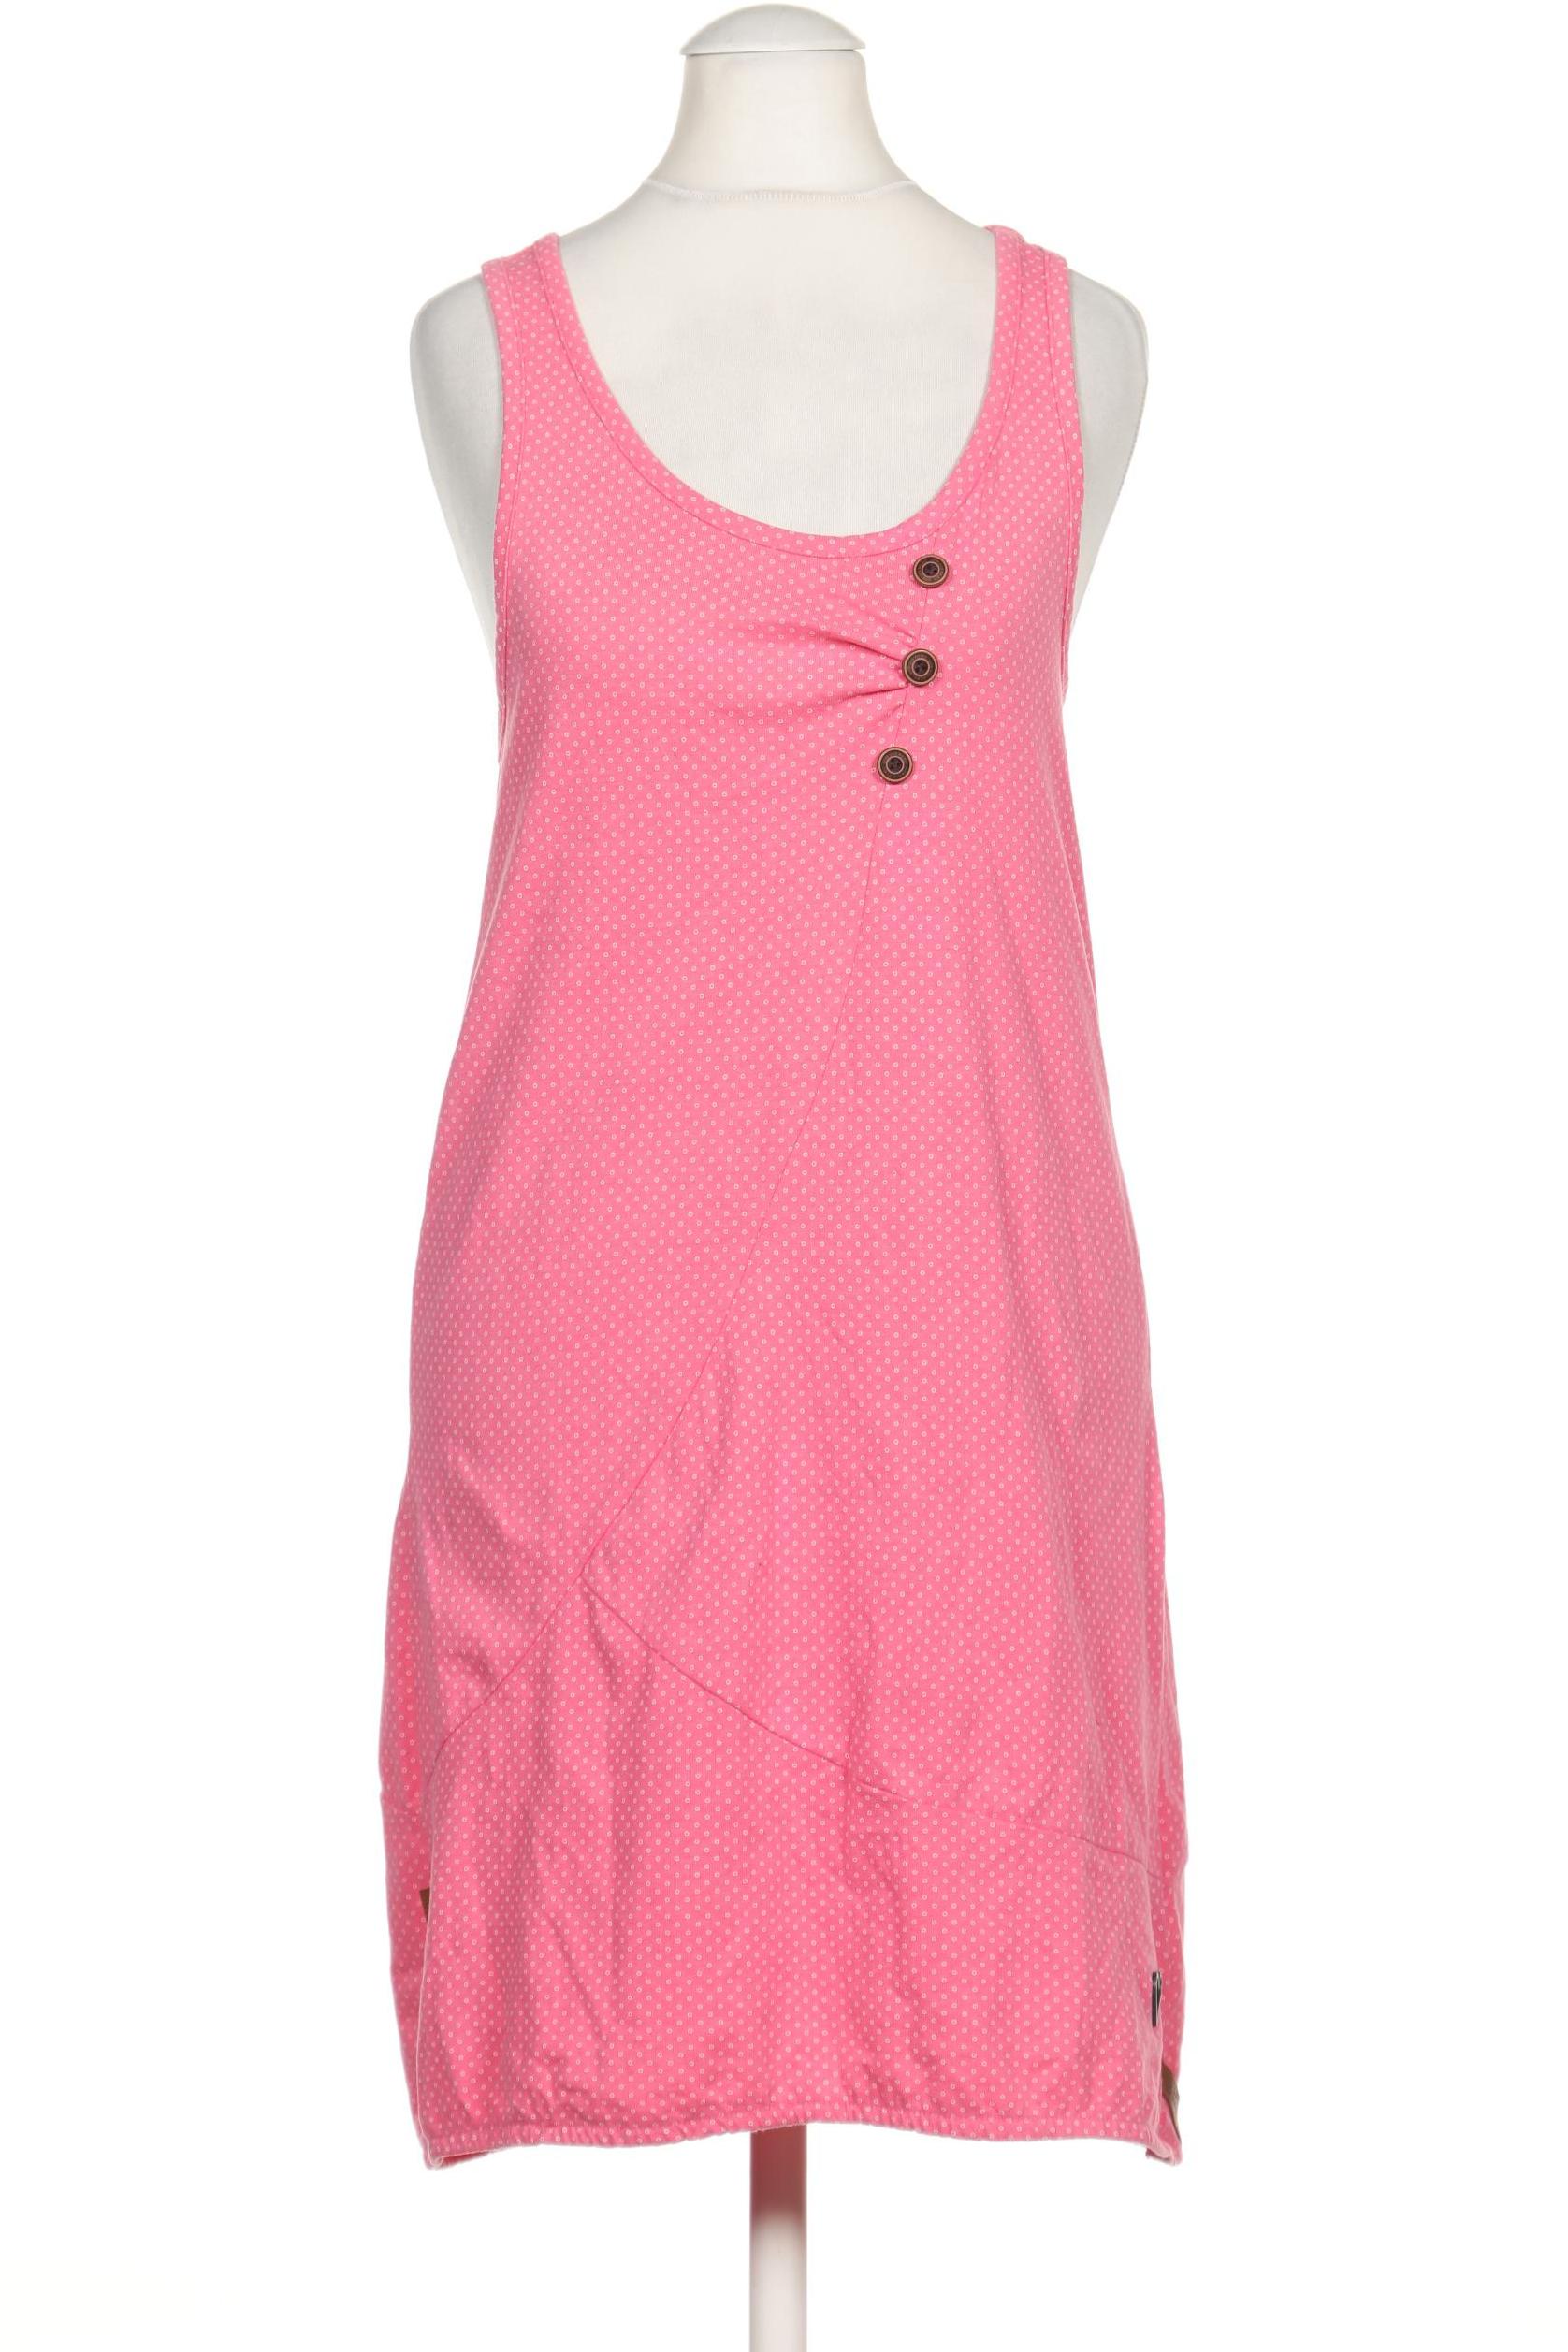 Alife & Kickin Damen Kleid, pink von Alife & Kickin